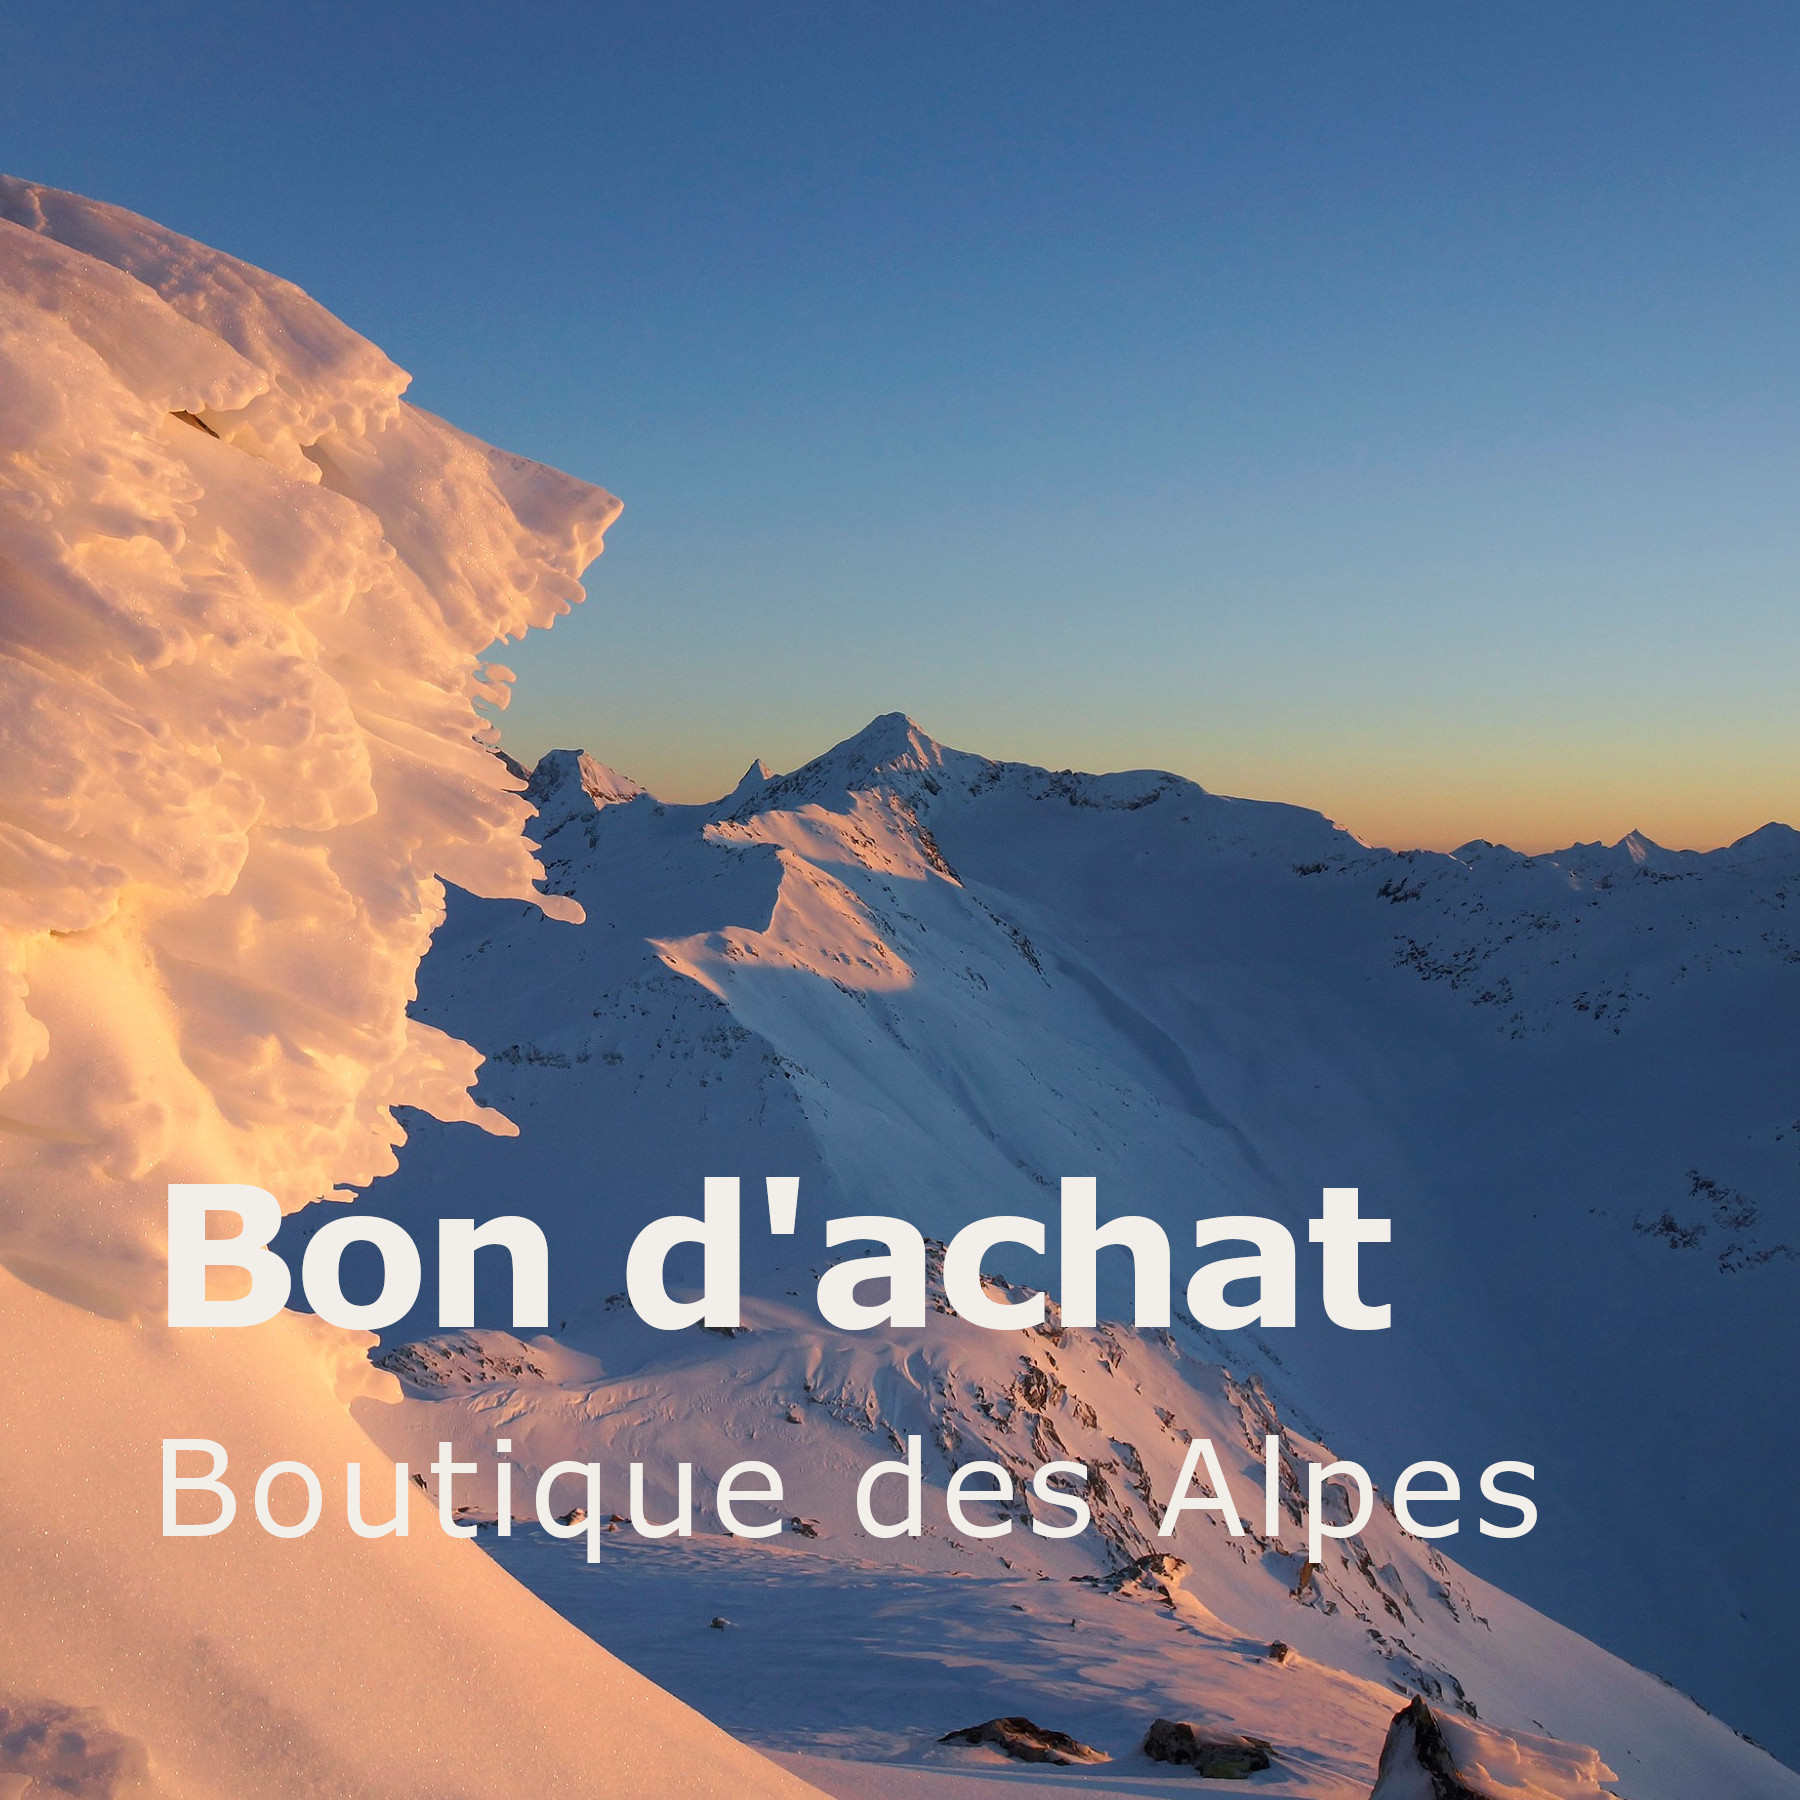 Bon pour la Boutique des Alpes, PDF par e-mail